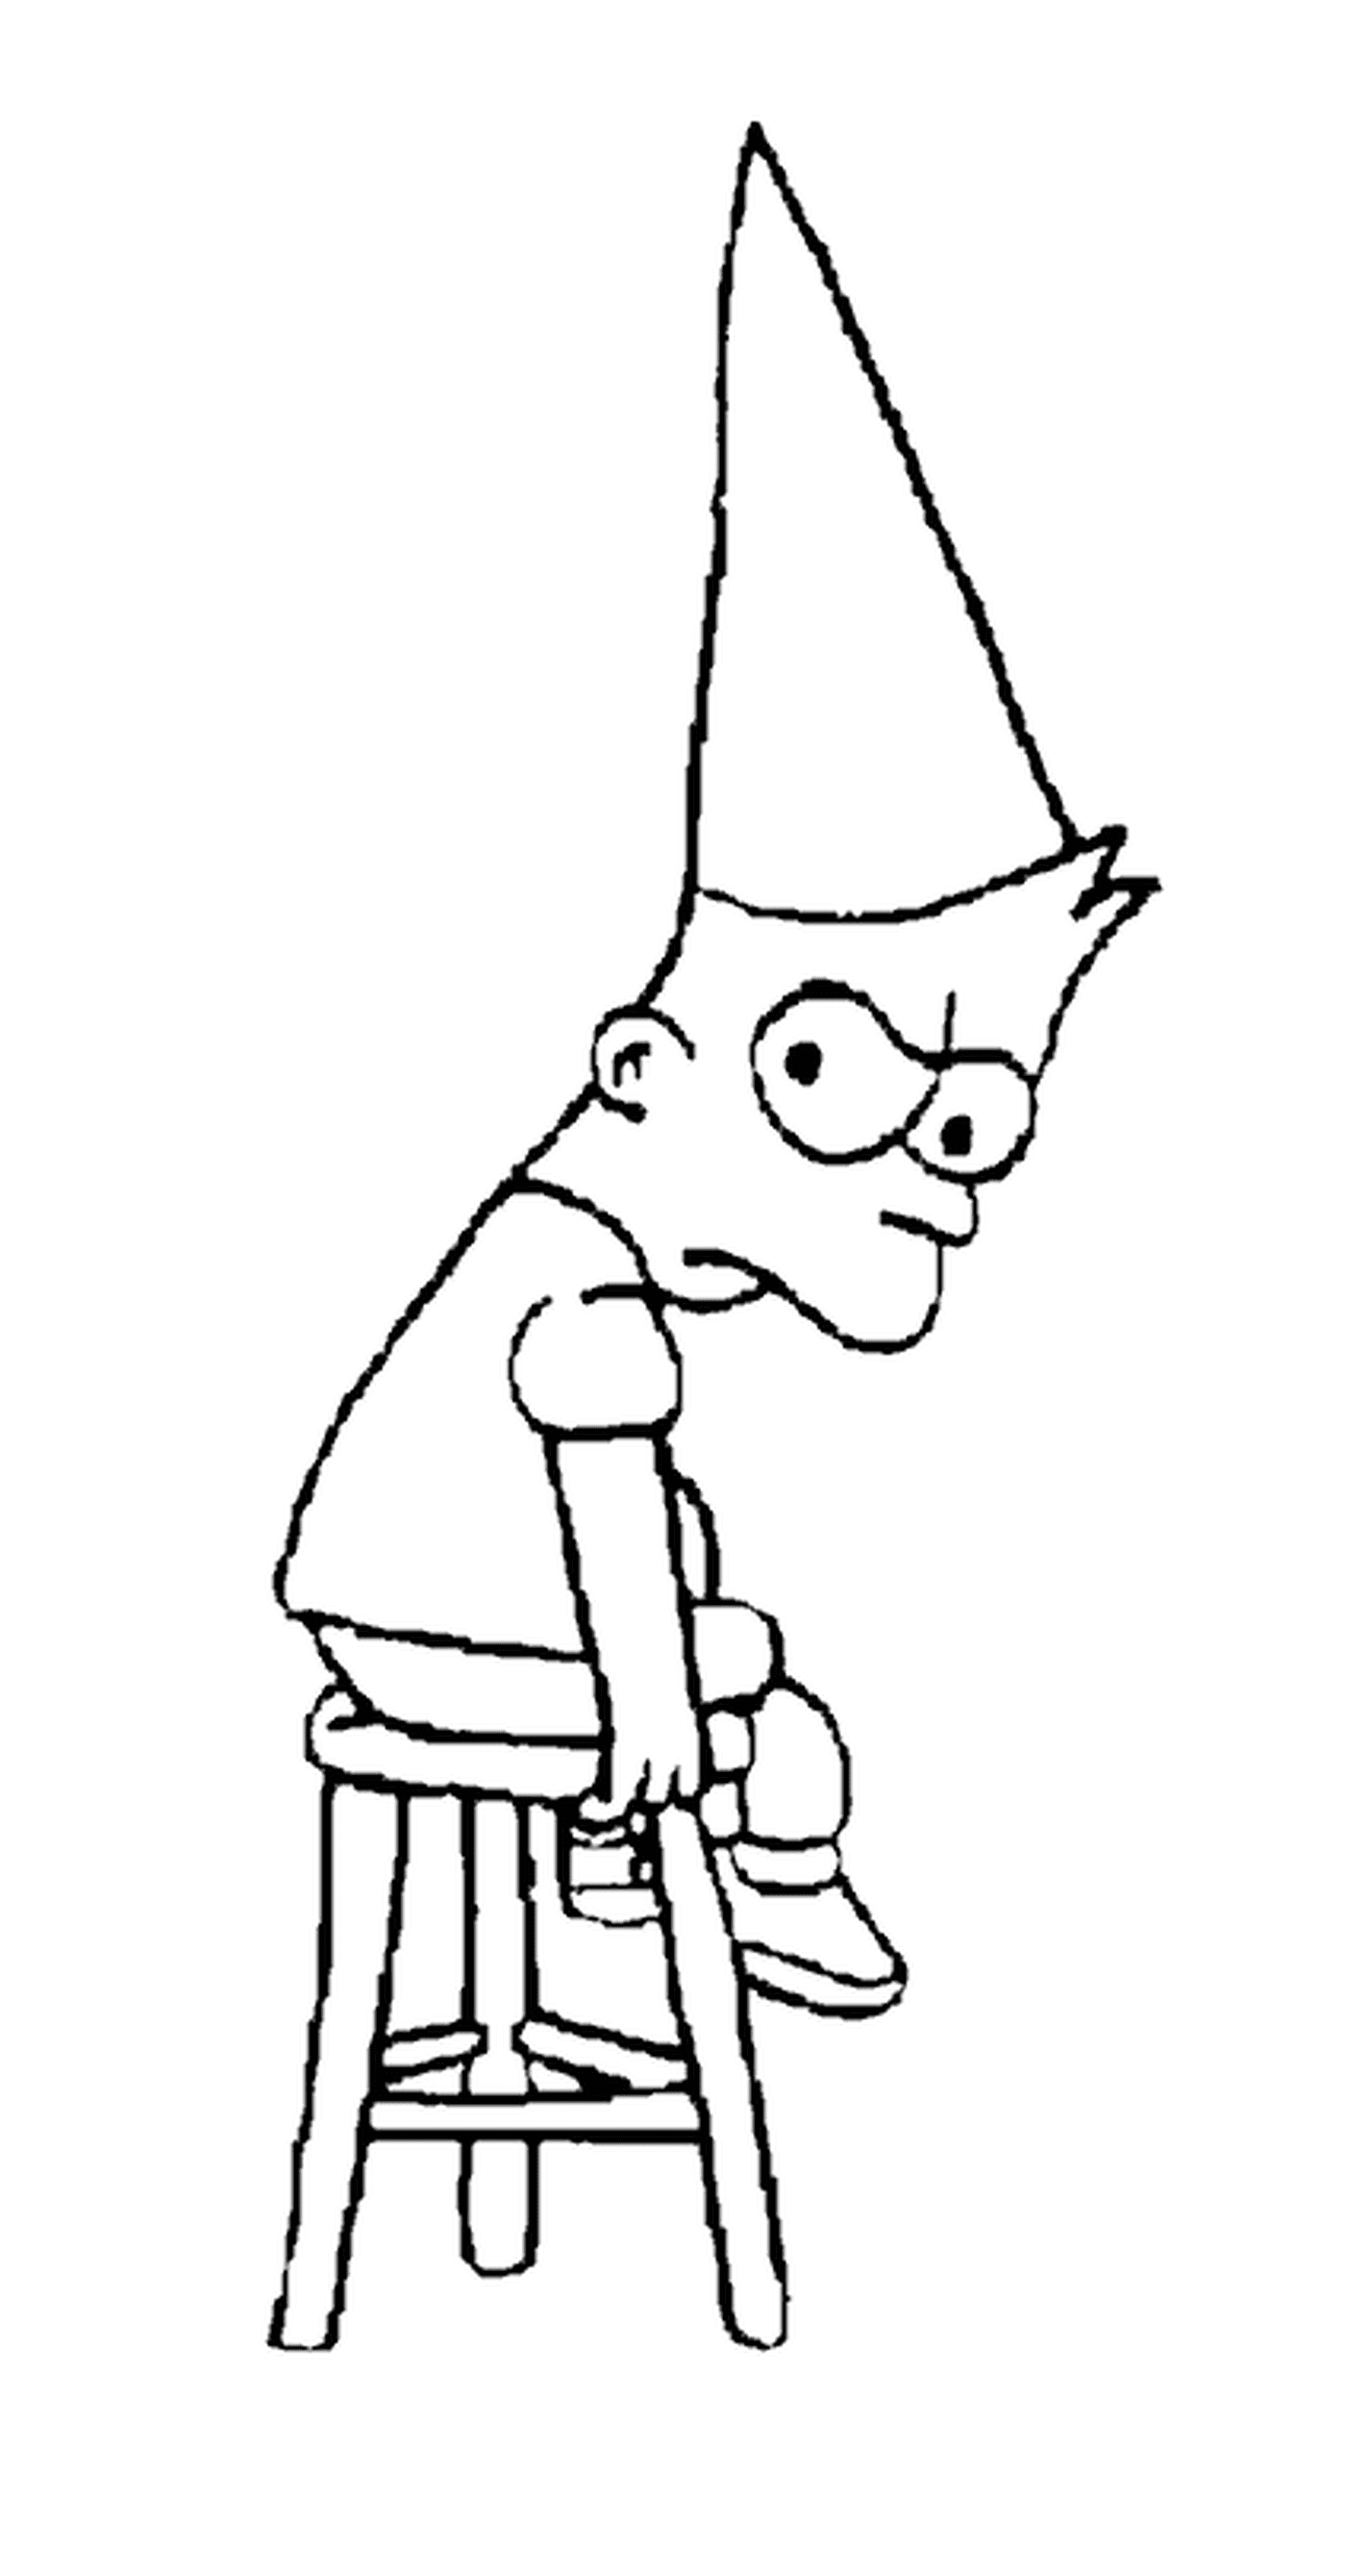  O chapéu de Anne para Bart, homem sentado com a cabeça para baixo 